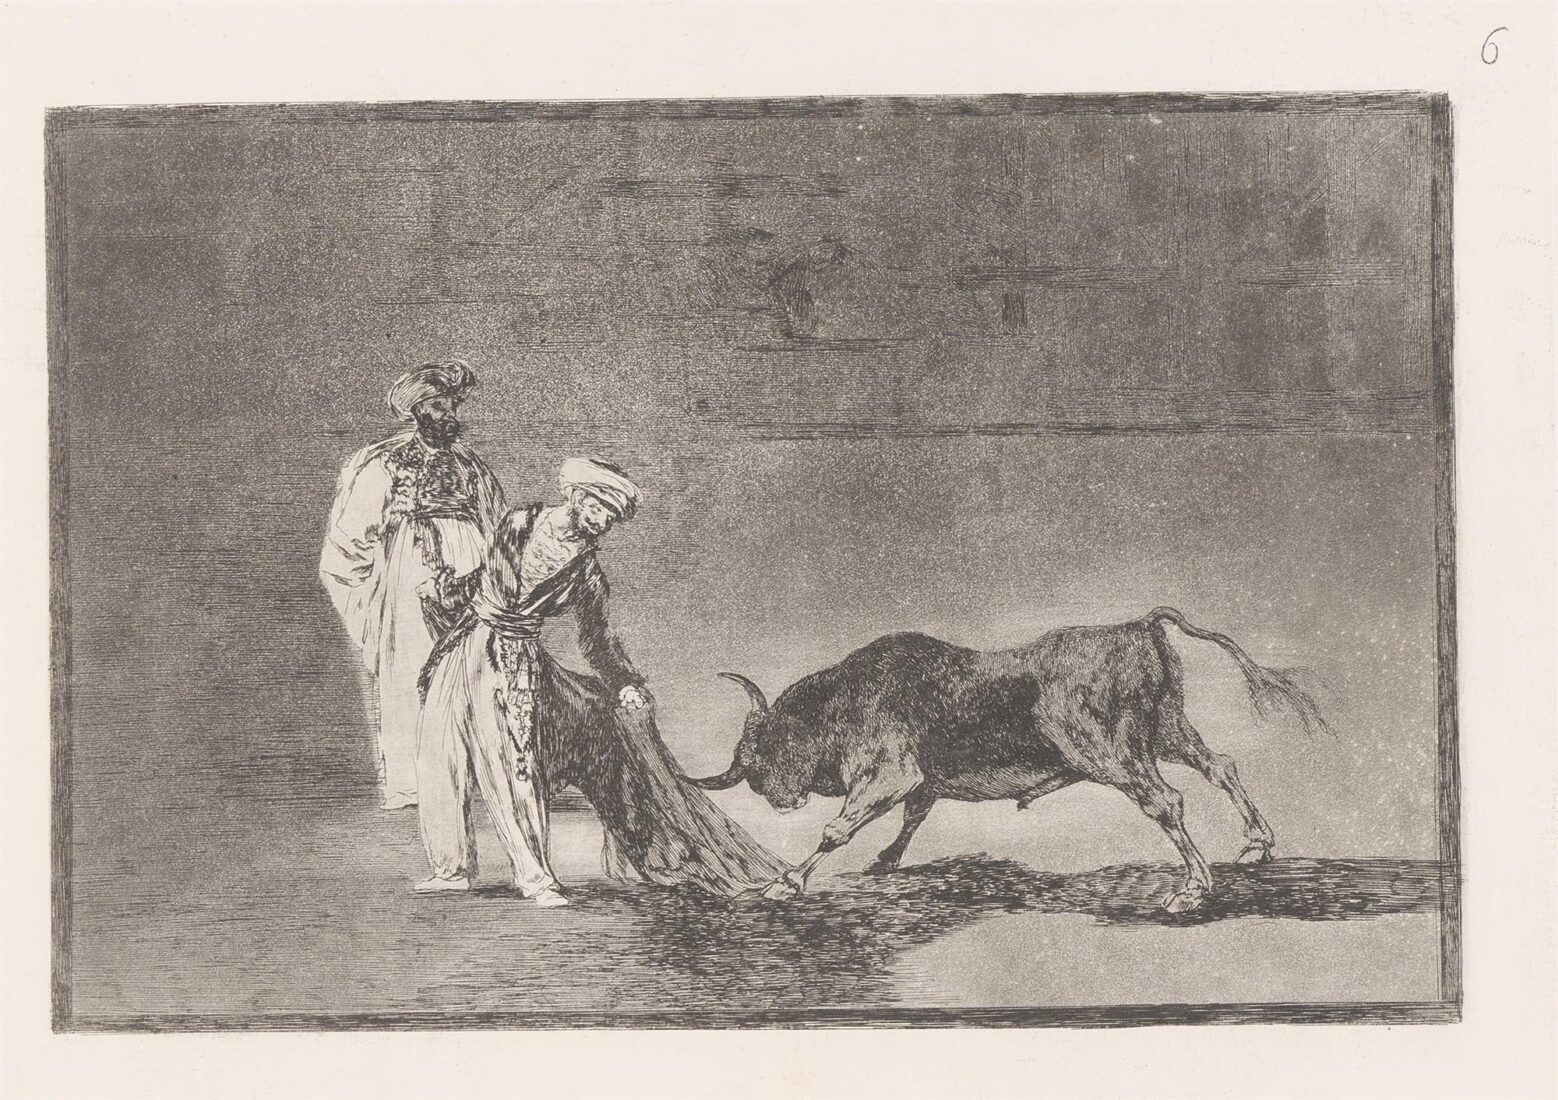 Οι Μαυριτανοί κάνουν άλλη φιγούρα στην αρένα με τα μπουρνούζια τους - Goya y Lucientes Francisco